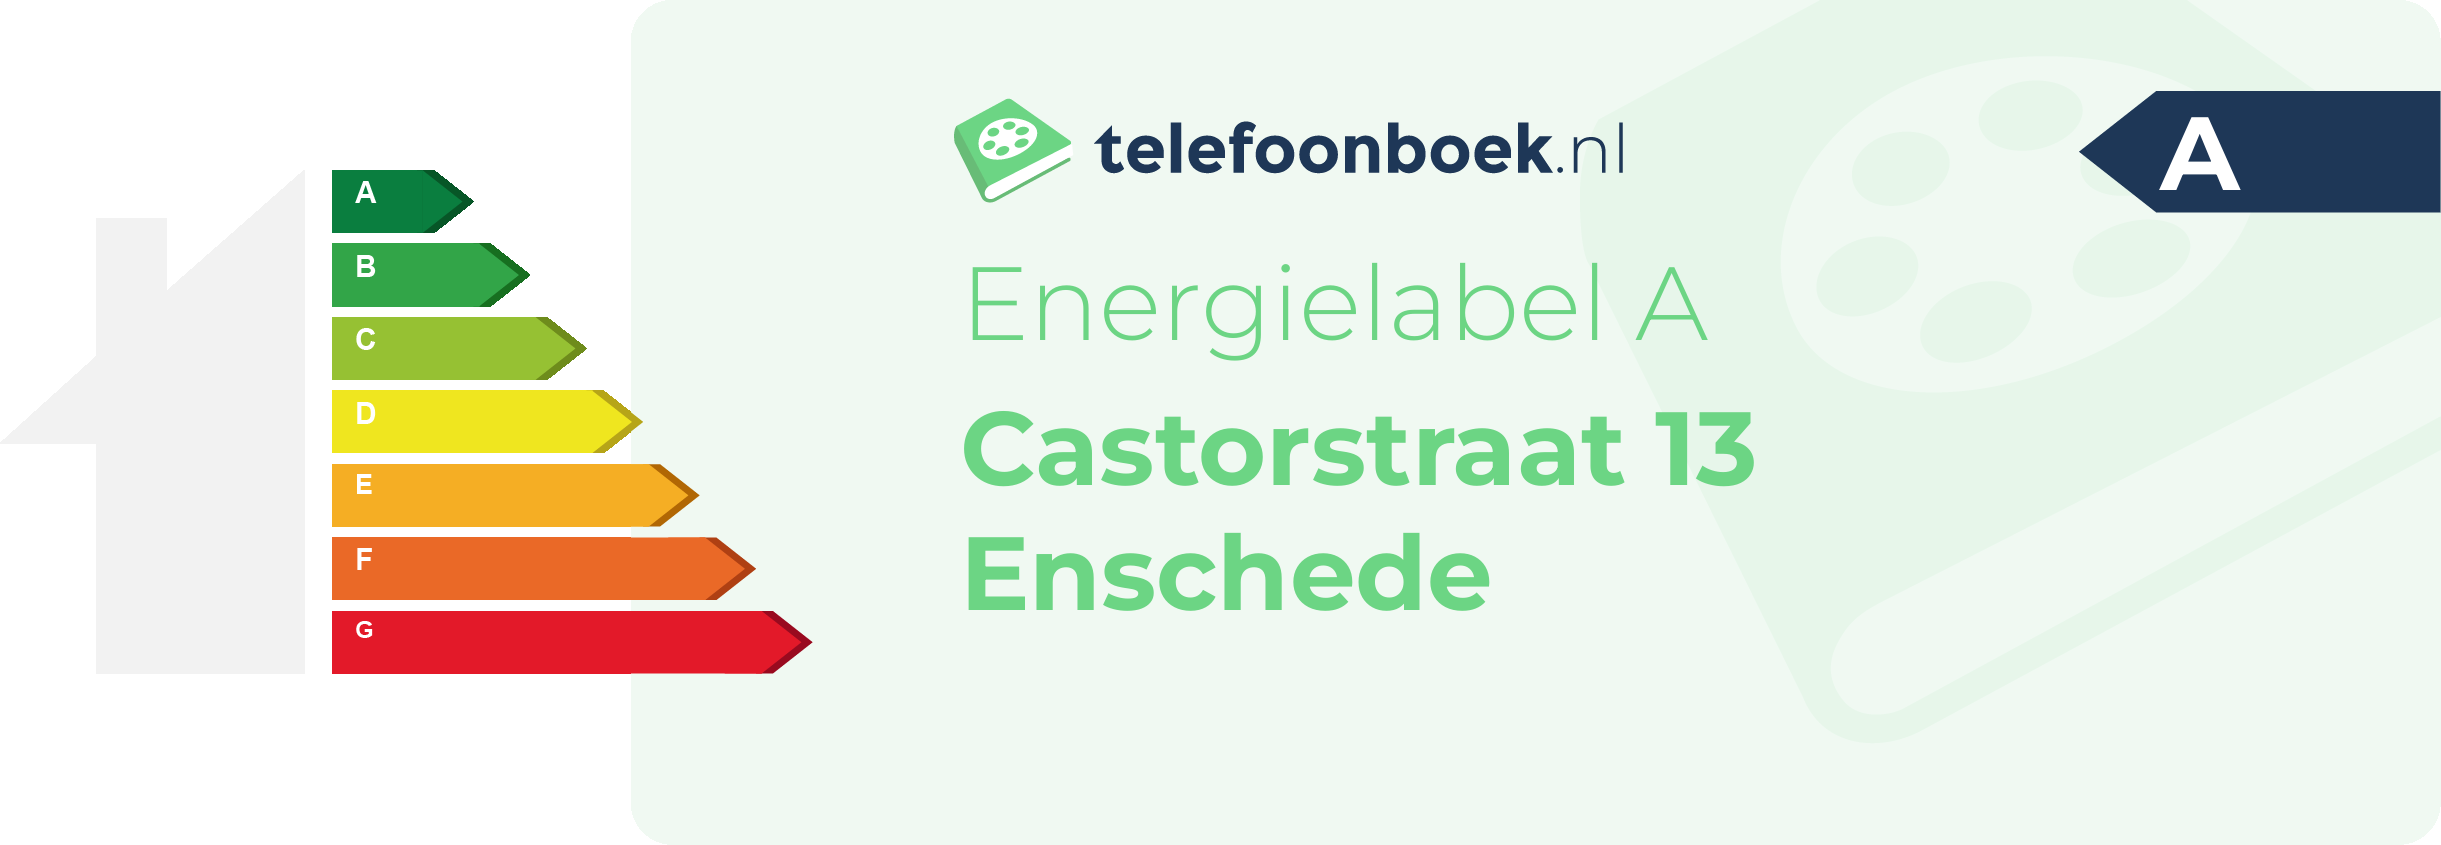 Energielabel Castorstraat 13 Enschede